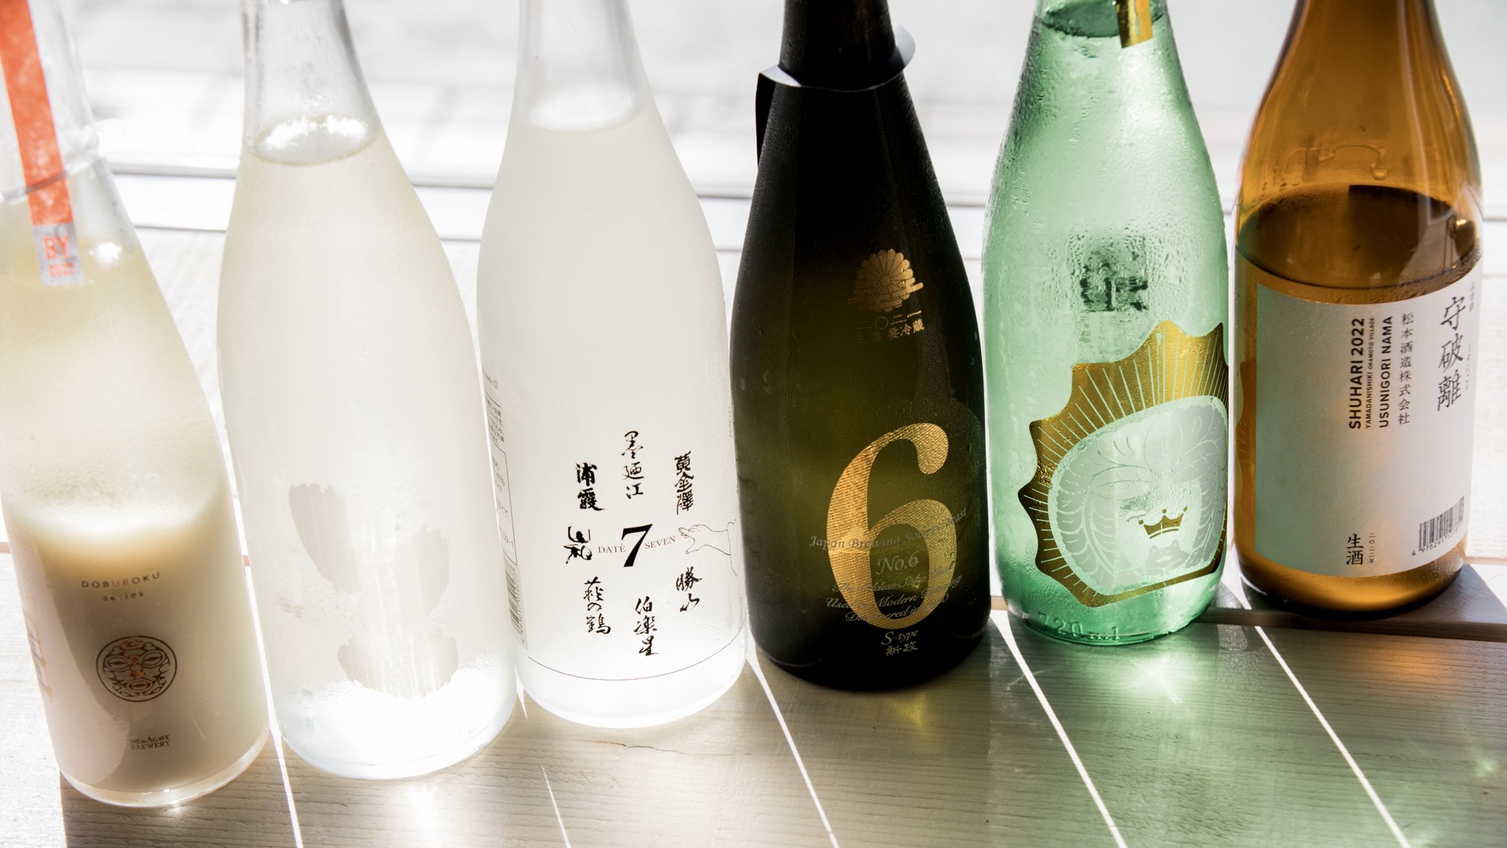 オーナーの利酒師が厳選した日本酒も提供しております。